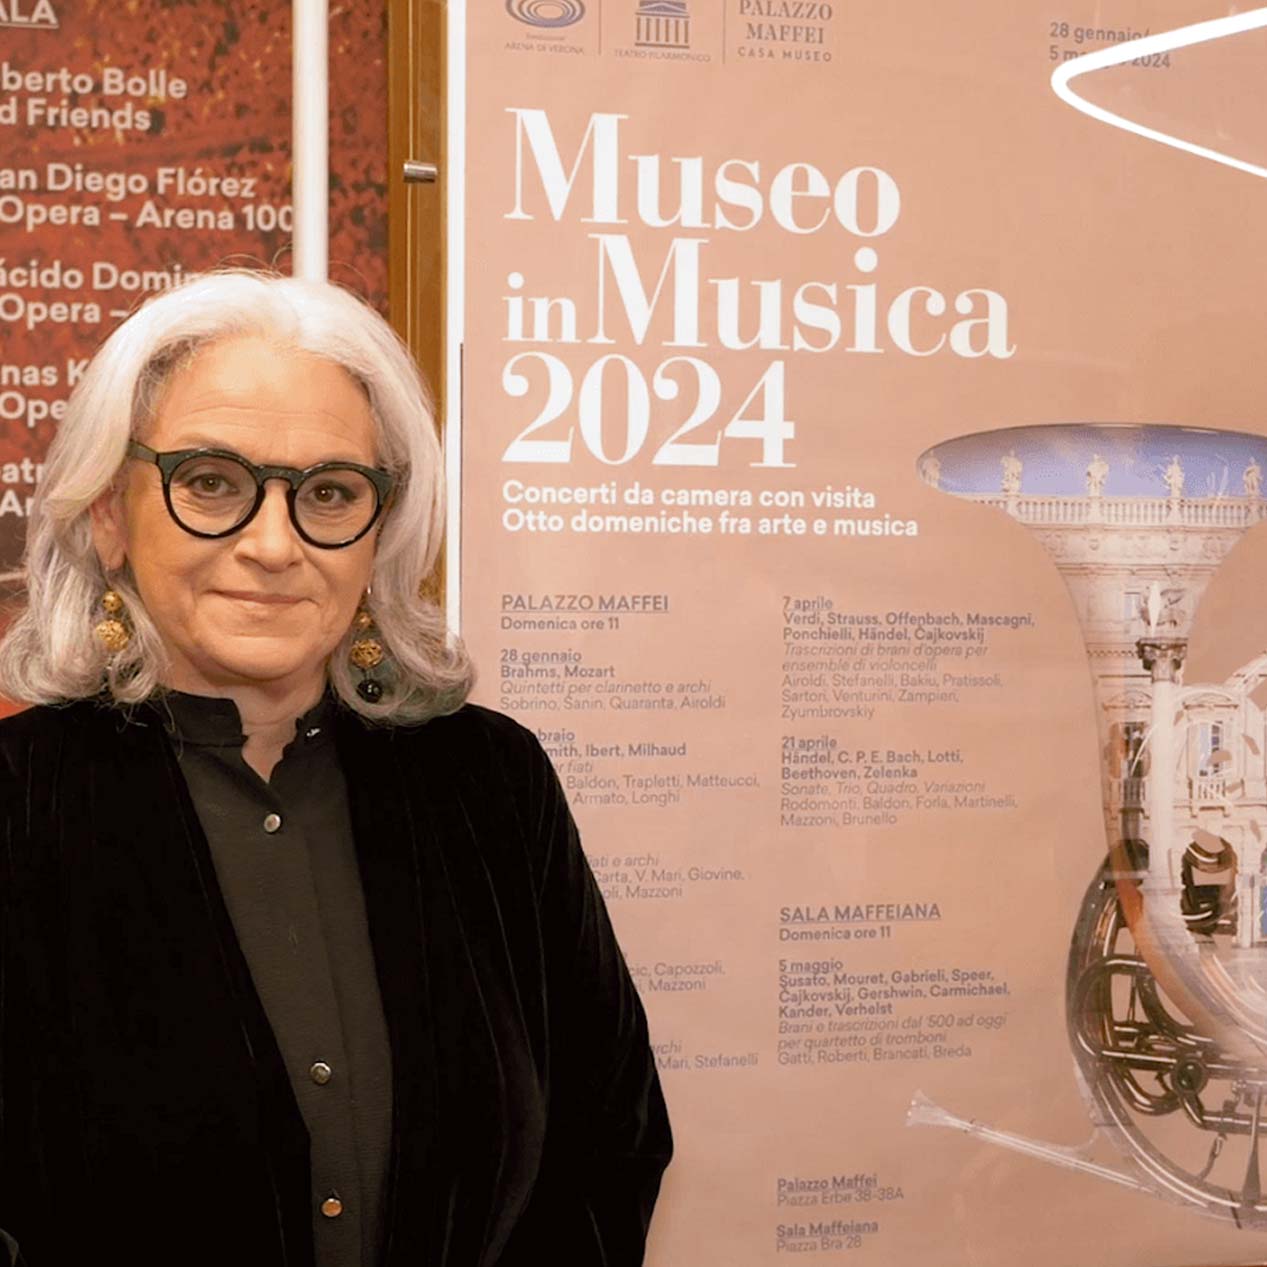 Museo in Musica. La nuova rassegna di Fondazione Arena chiude registrando il sold out a tutti i concerti.